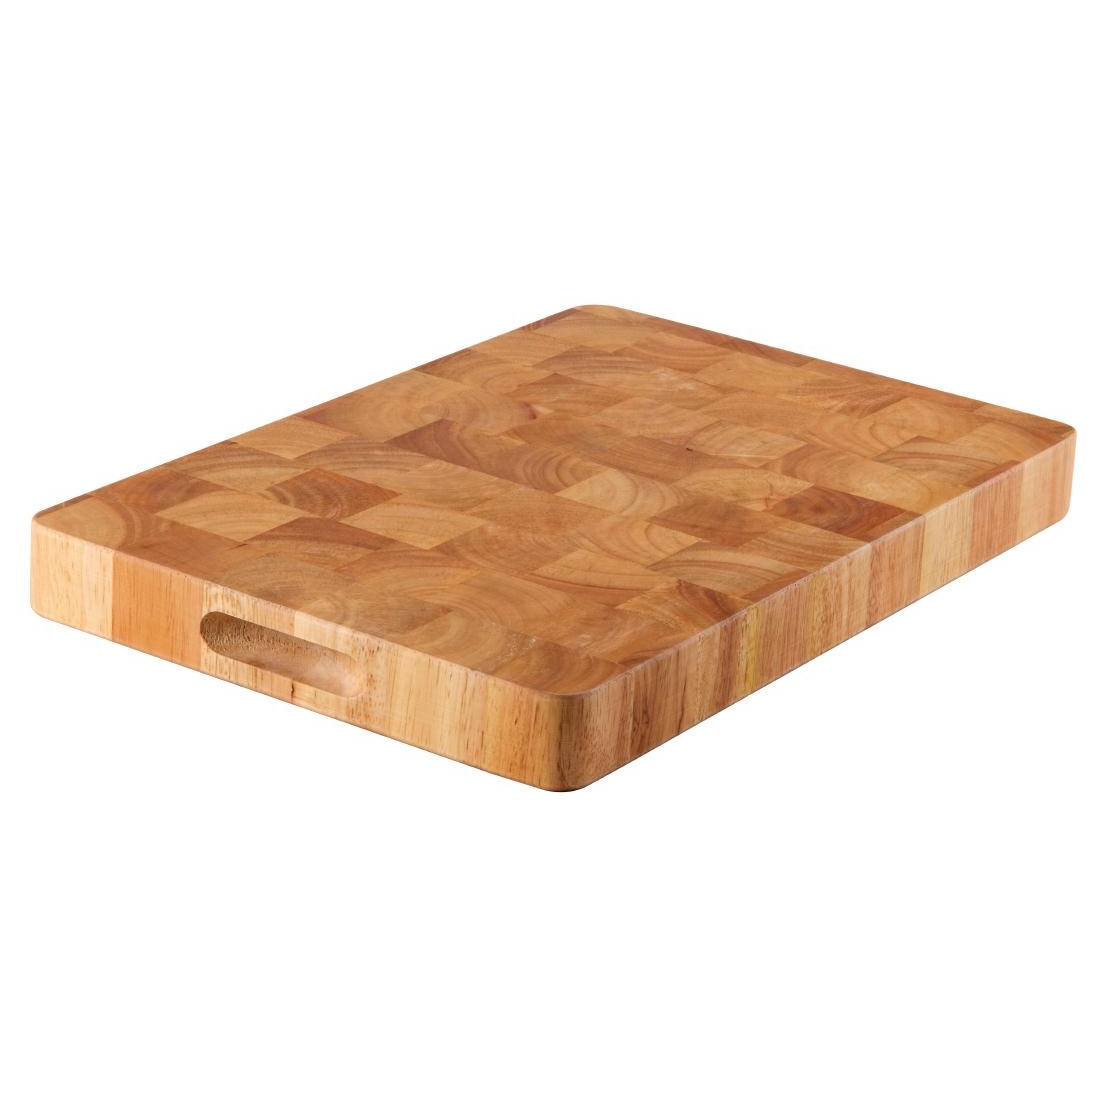 wooden bread boards